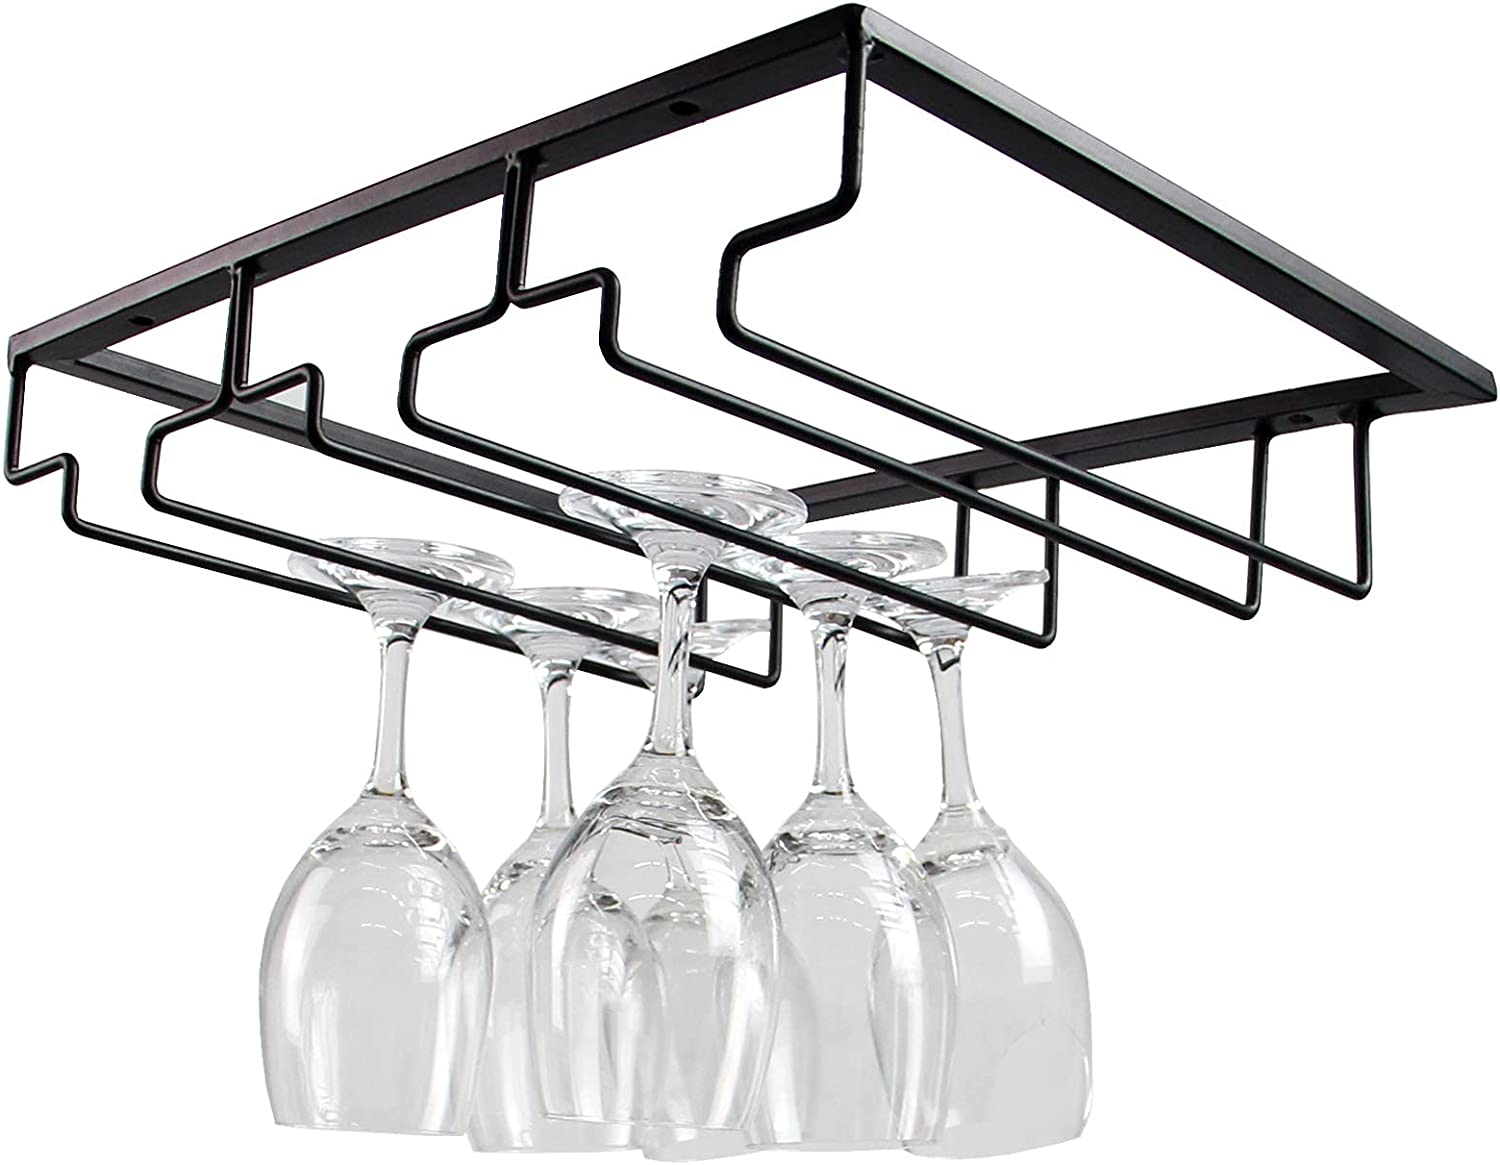 Casaphoria Wine Glass Rack – Under Cabinet Stemware Wine Glass Holder Glasses Storage Hanger Metal Organizer for Bar Kitchen